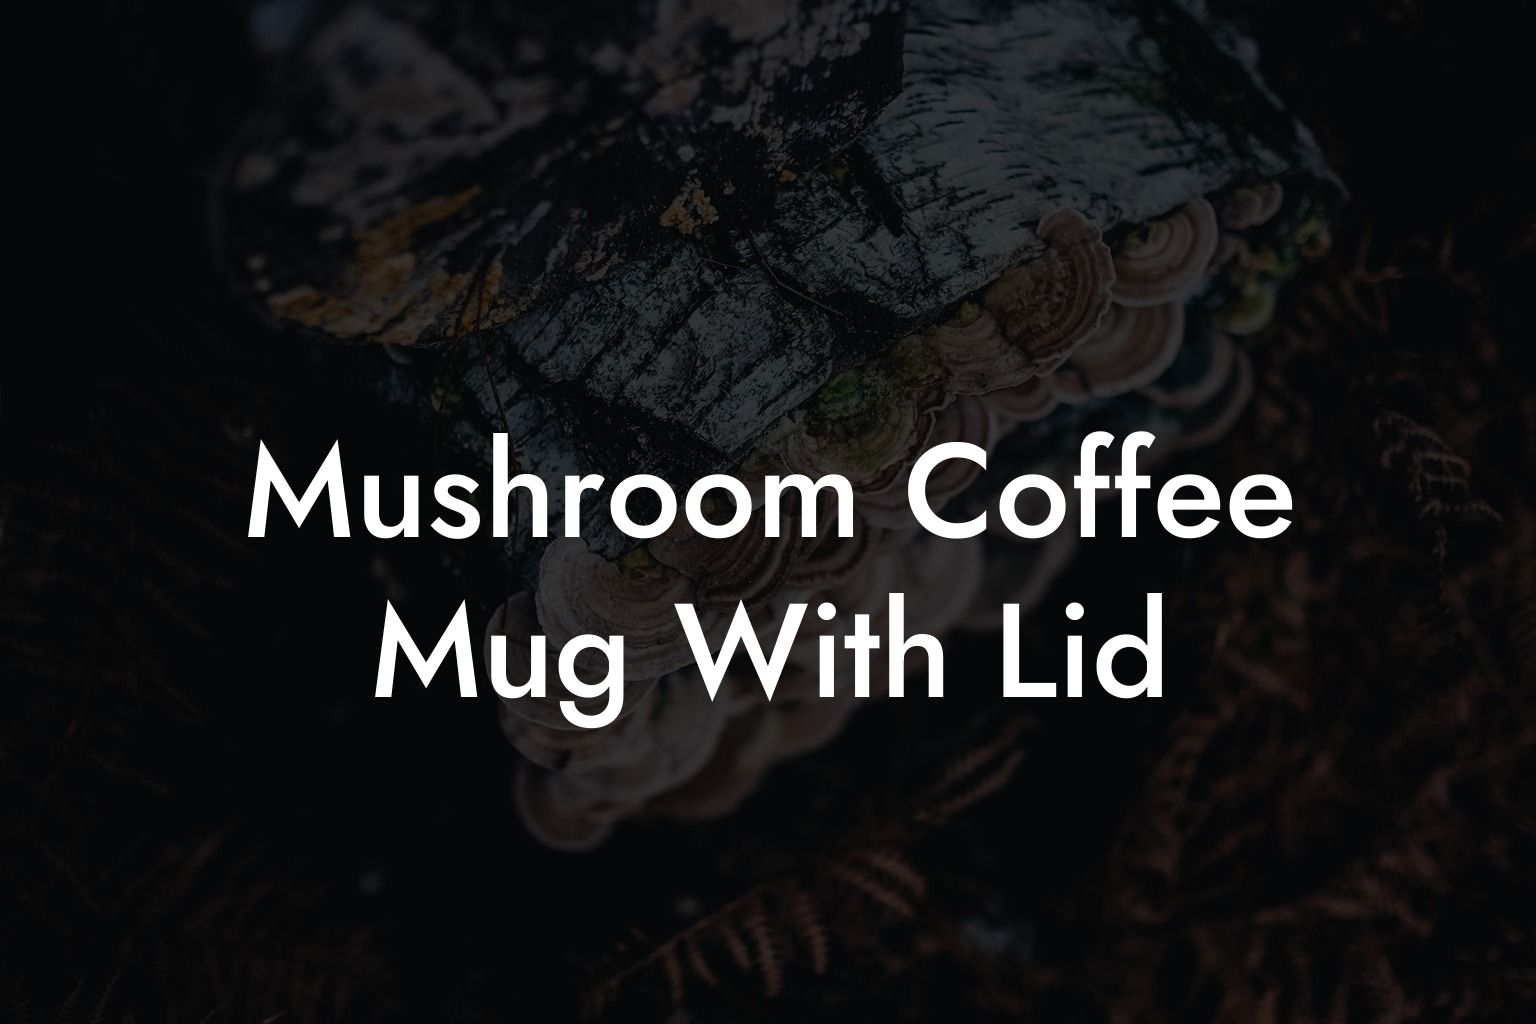 Mushroom Coffee Mug With Lid